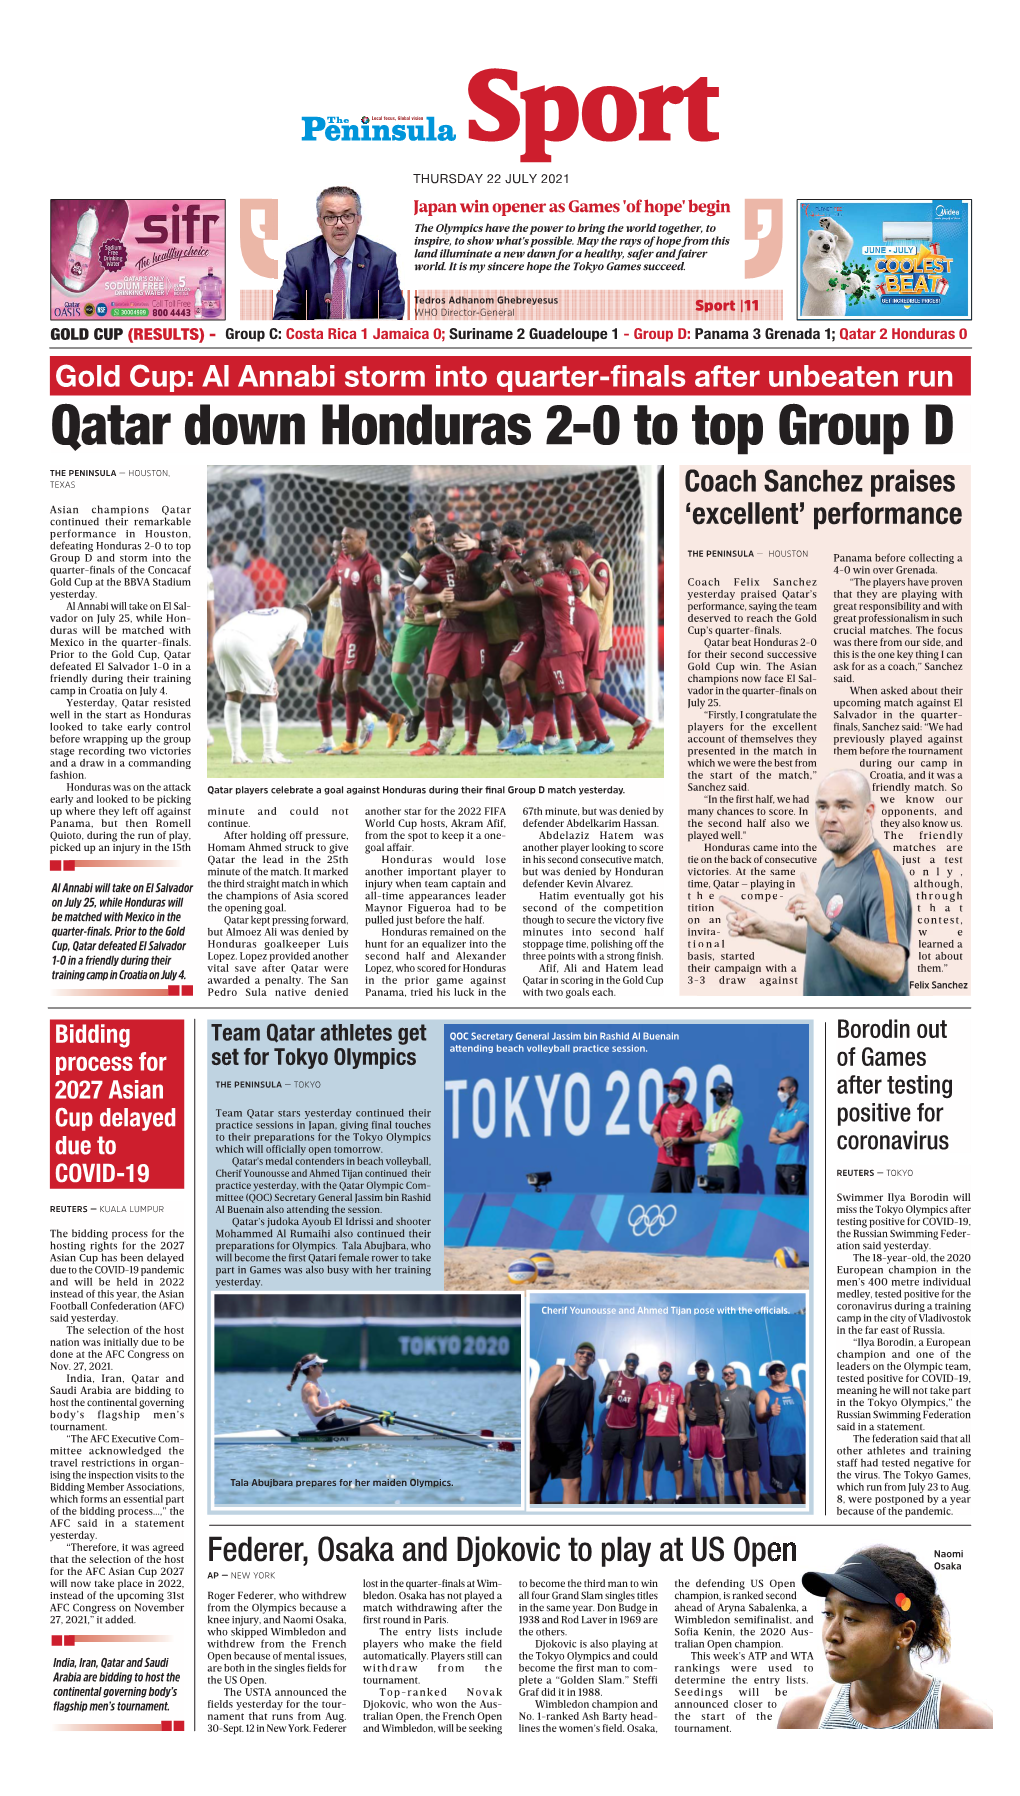 Qatar Down Honduras 2-0 to Top Group D